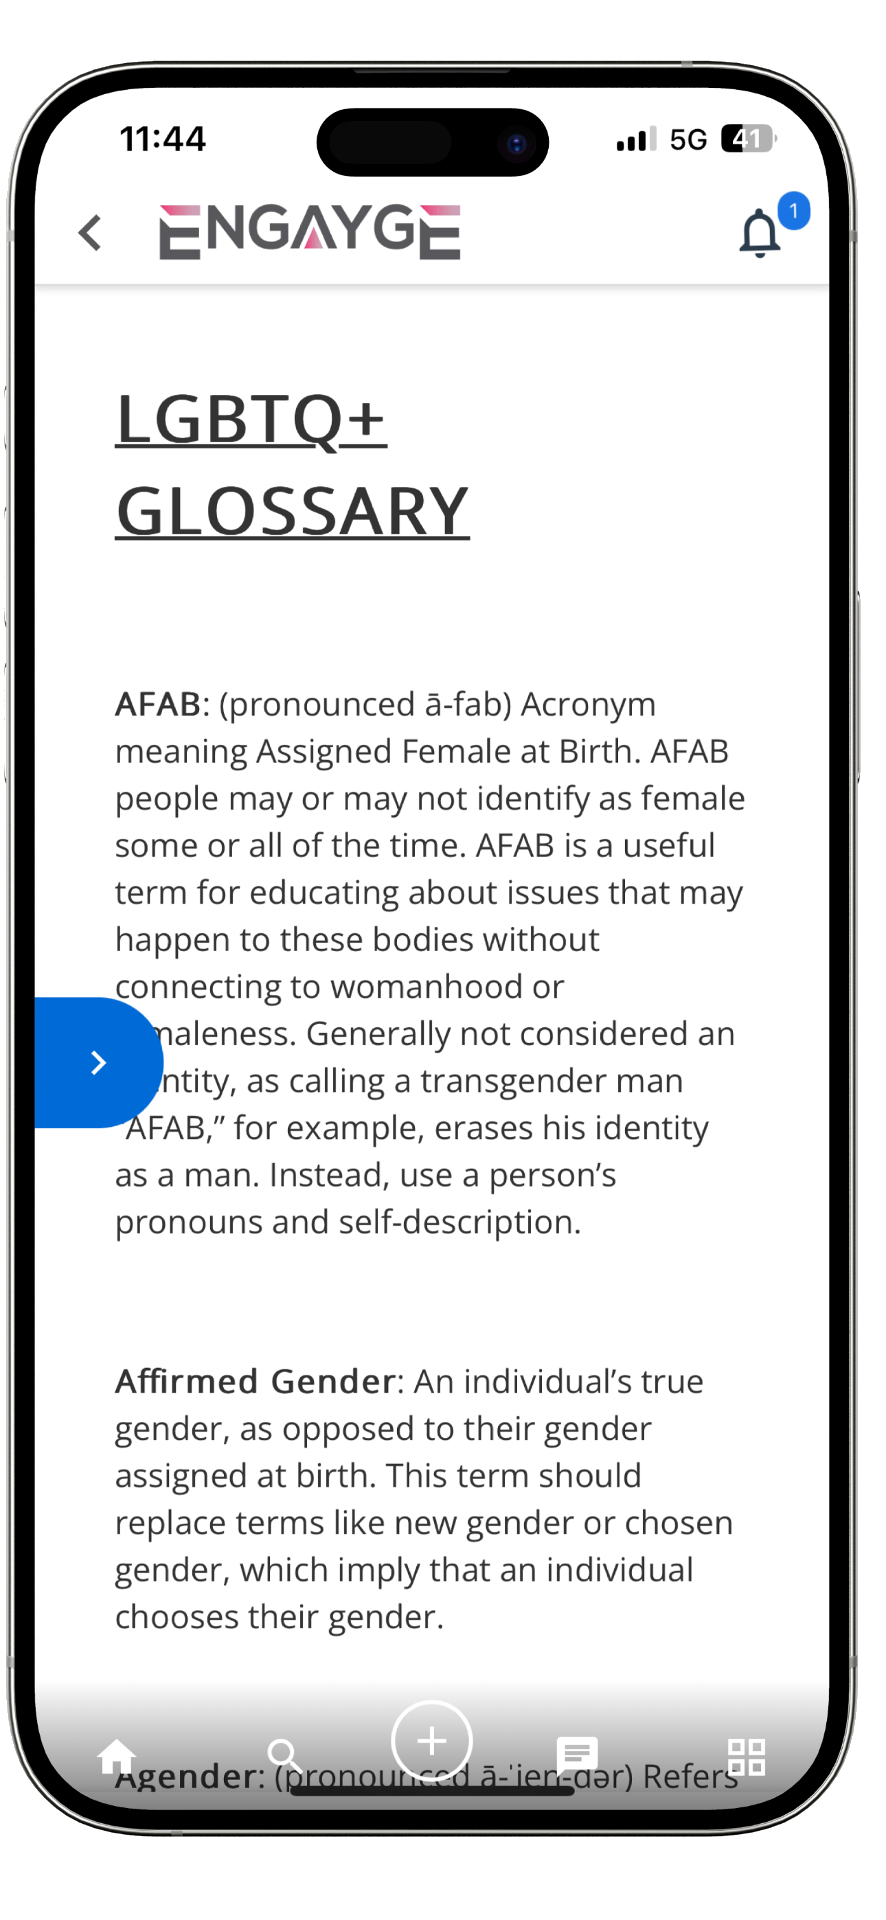 LGBTQ+ Glossary